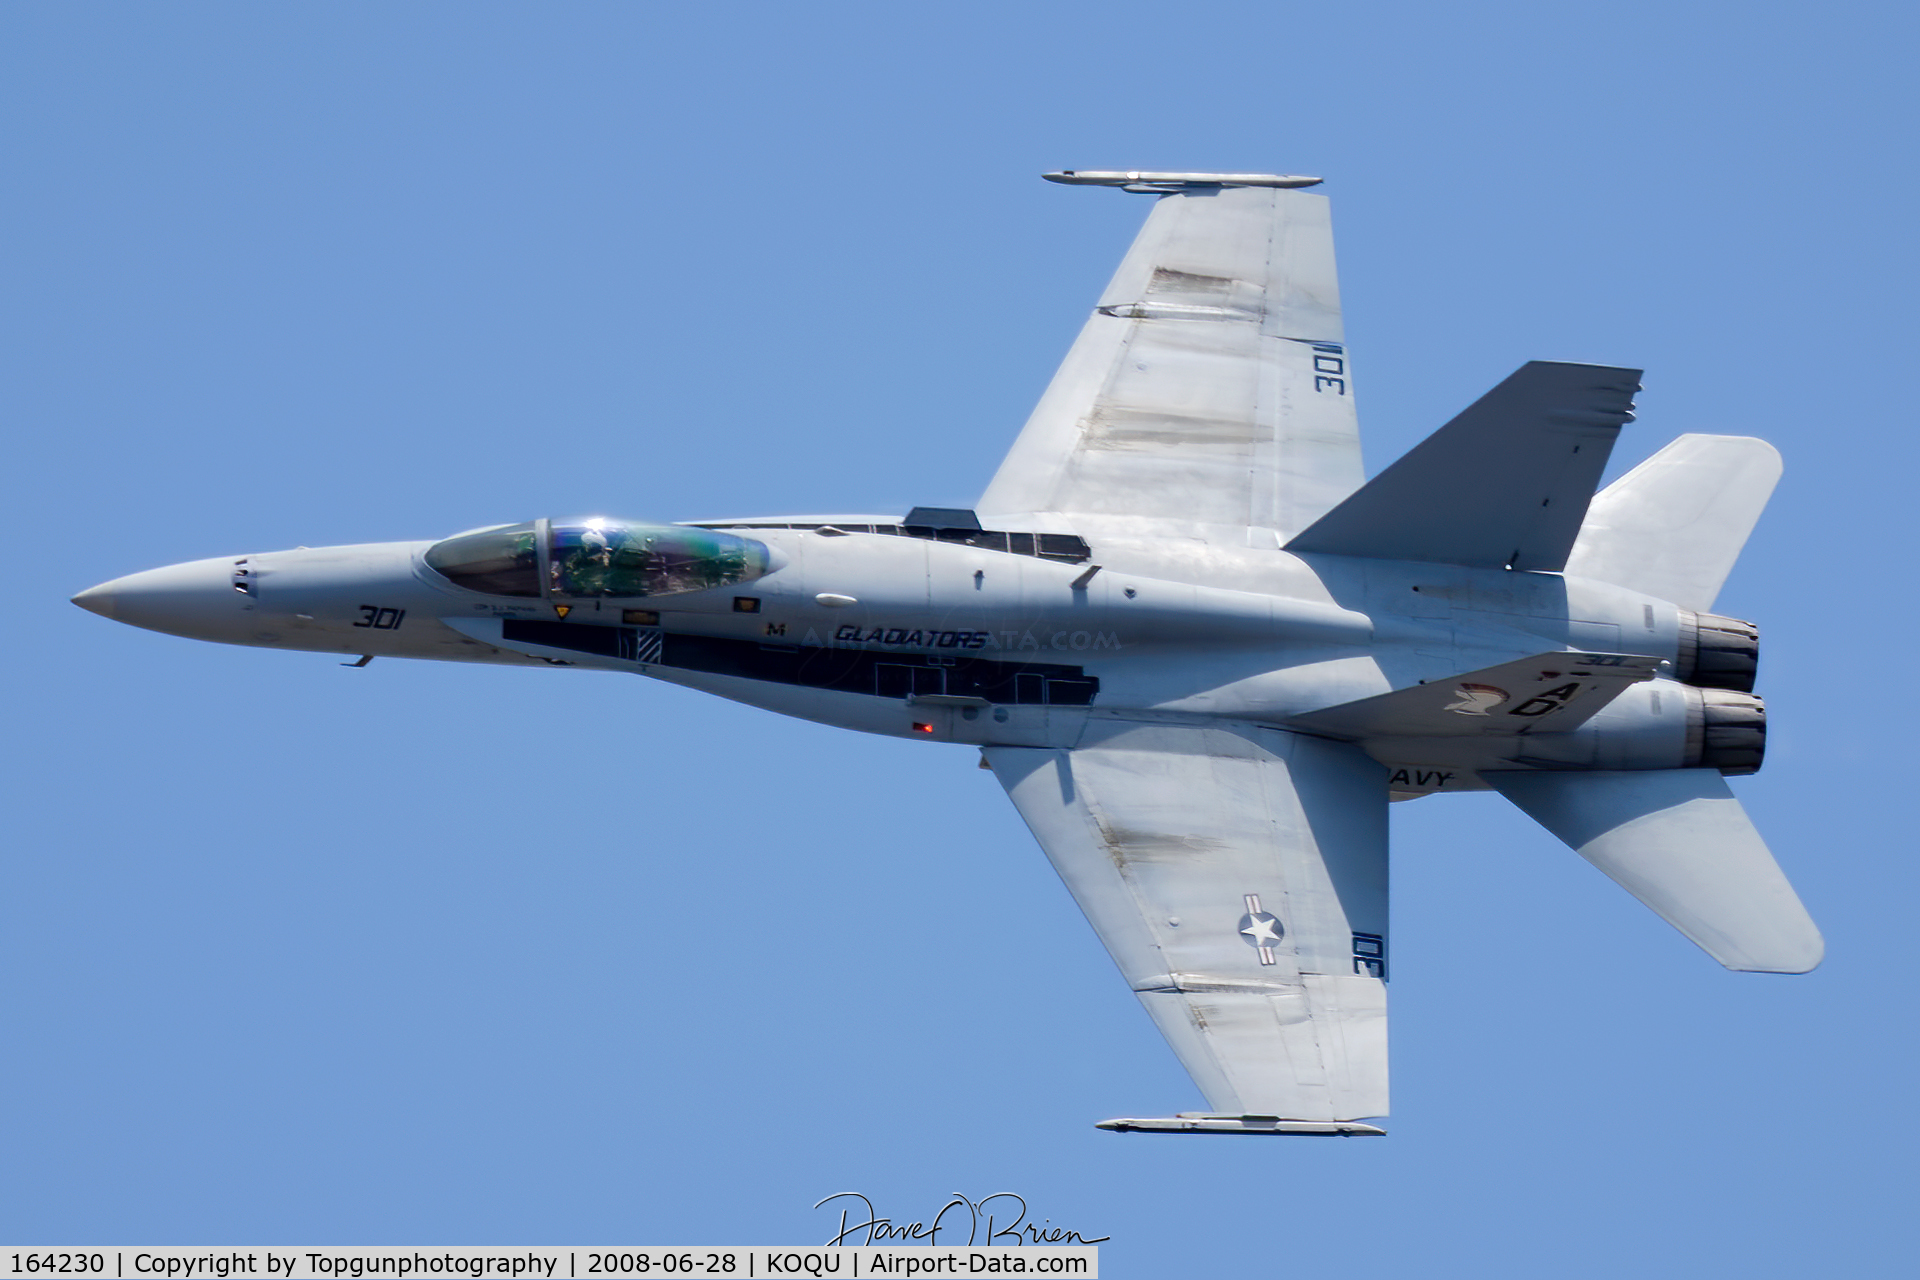 164230, 1991 McDonnell Douglas F/A-18C Hornet C/N 0993/C217, photo pass